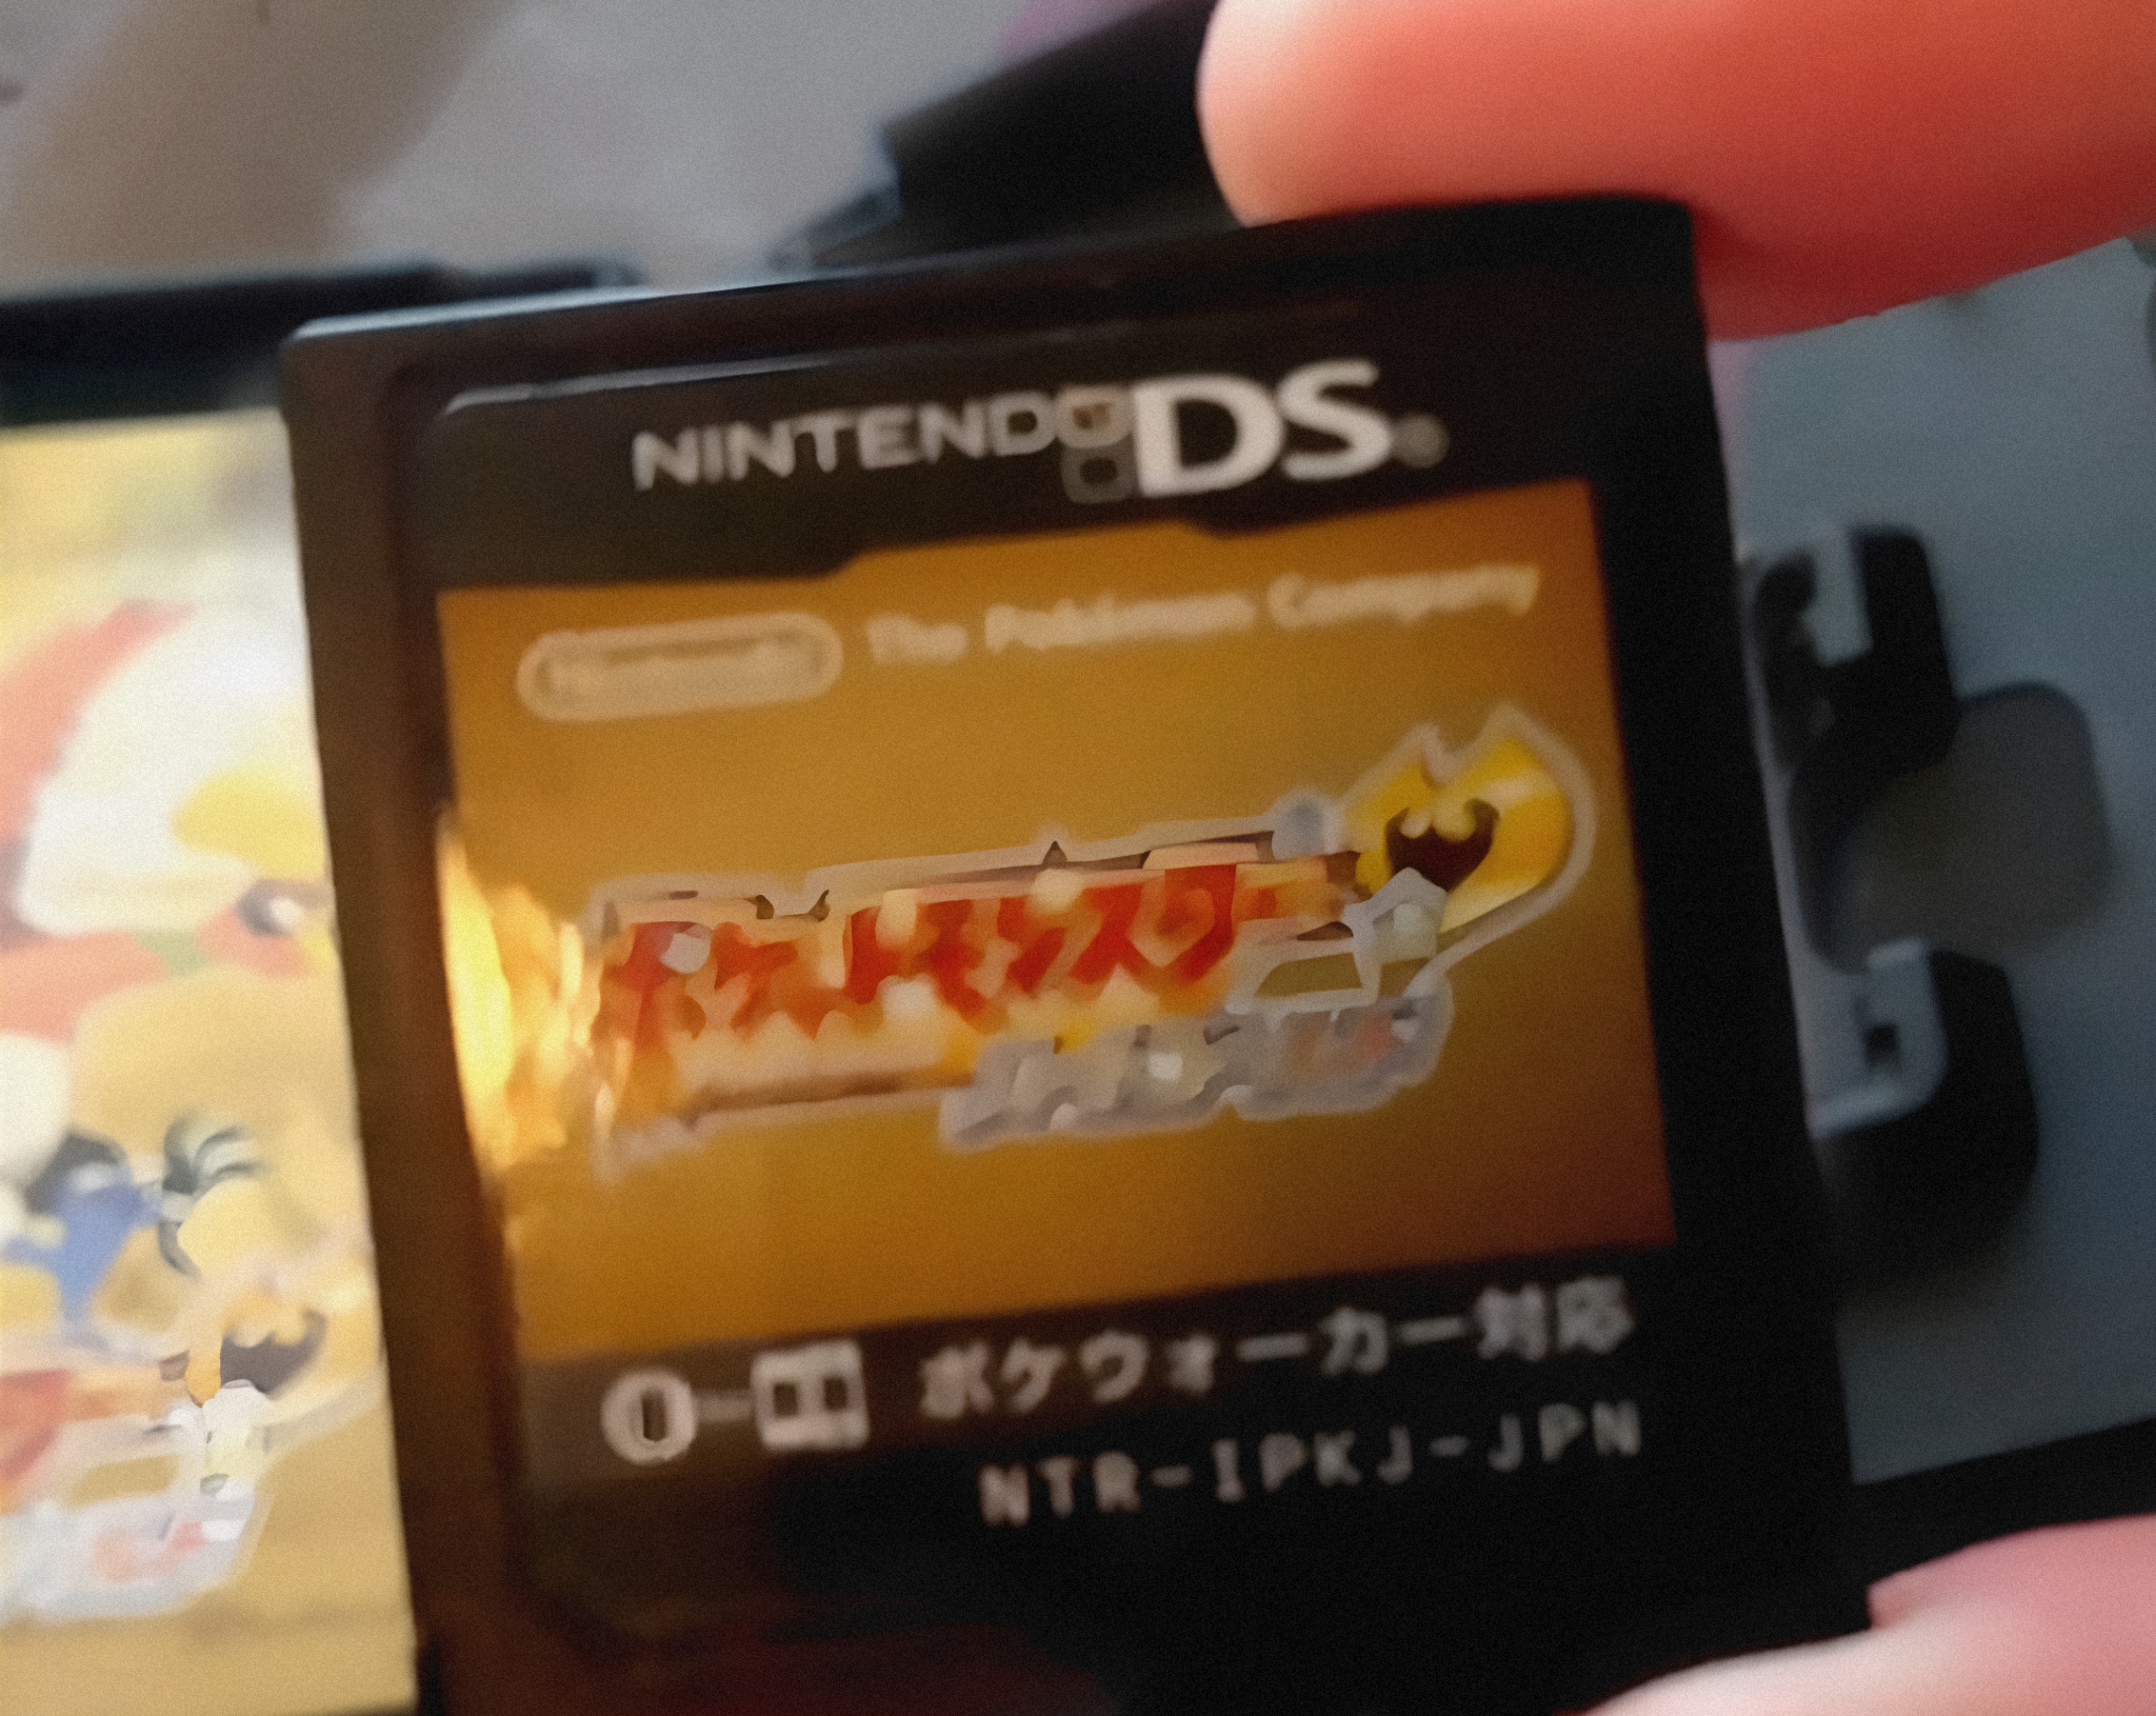 Prima 2010) Pokemon Heart Gold & Soul Silver Johto : Prima : Free Download,  Borrow, and Streaming : Internet Archive